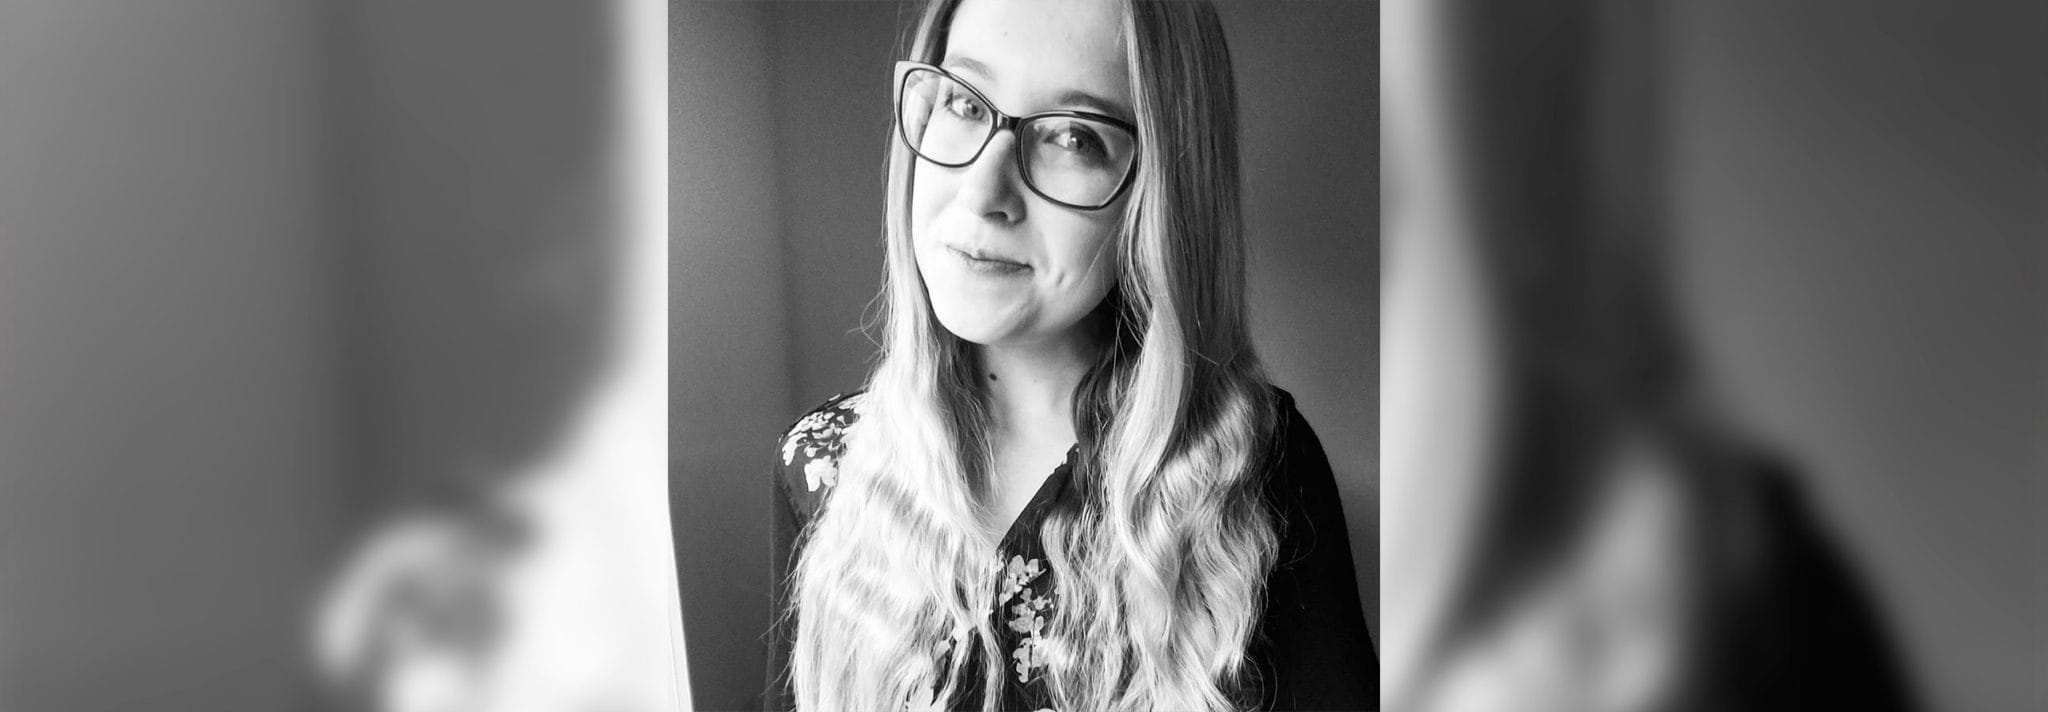 Meet Elise: New Account Coordinator